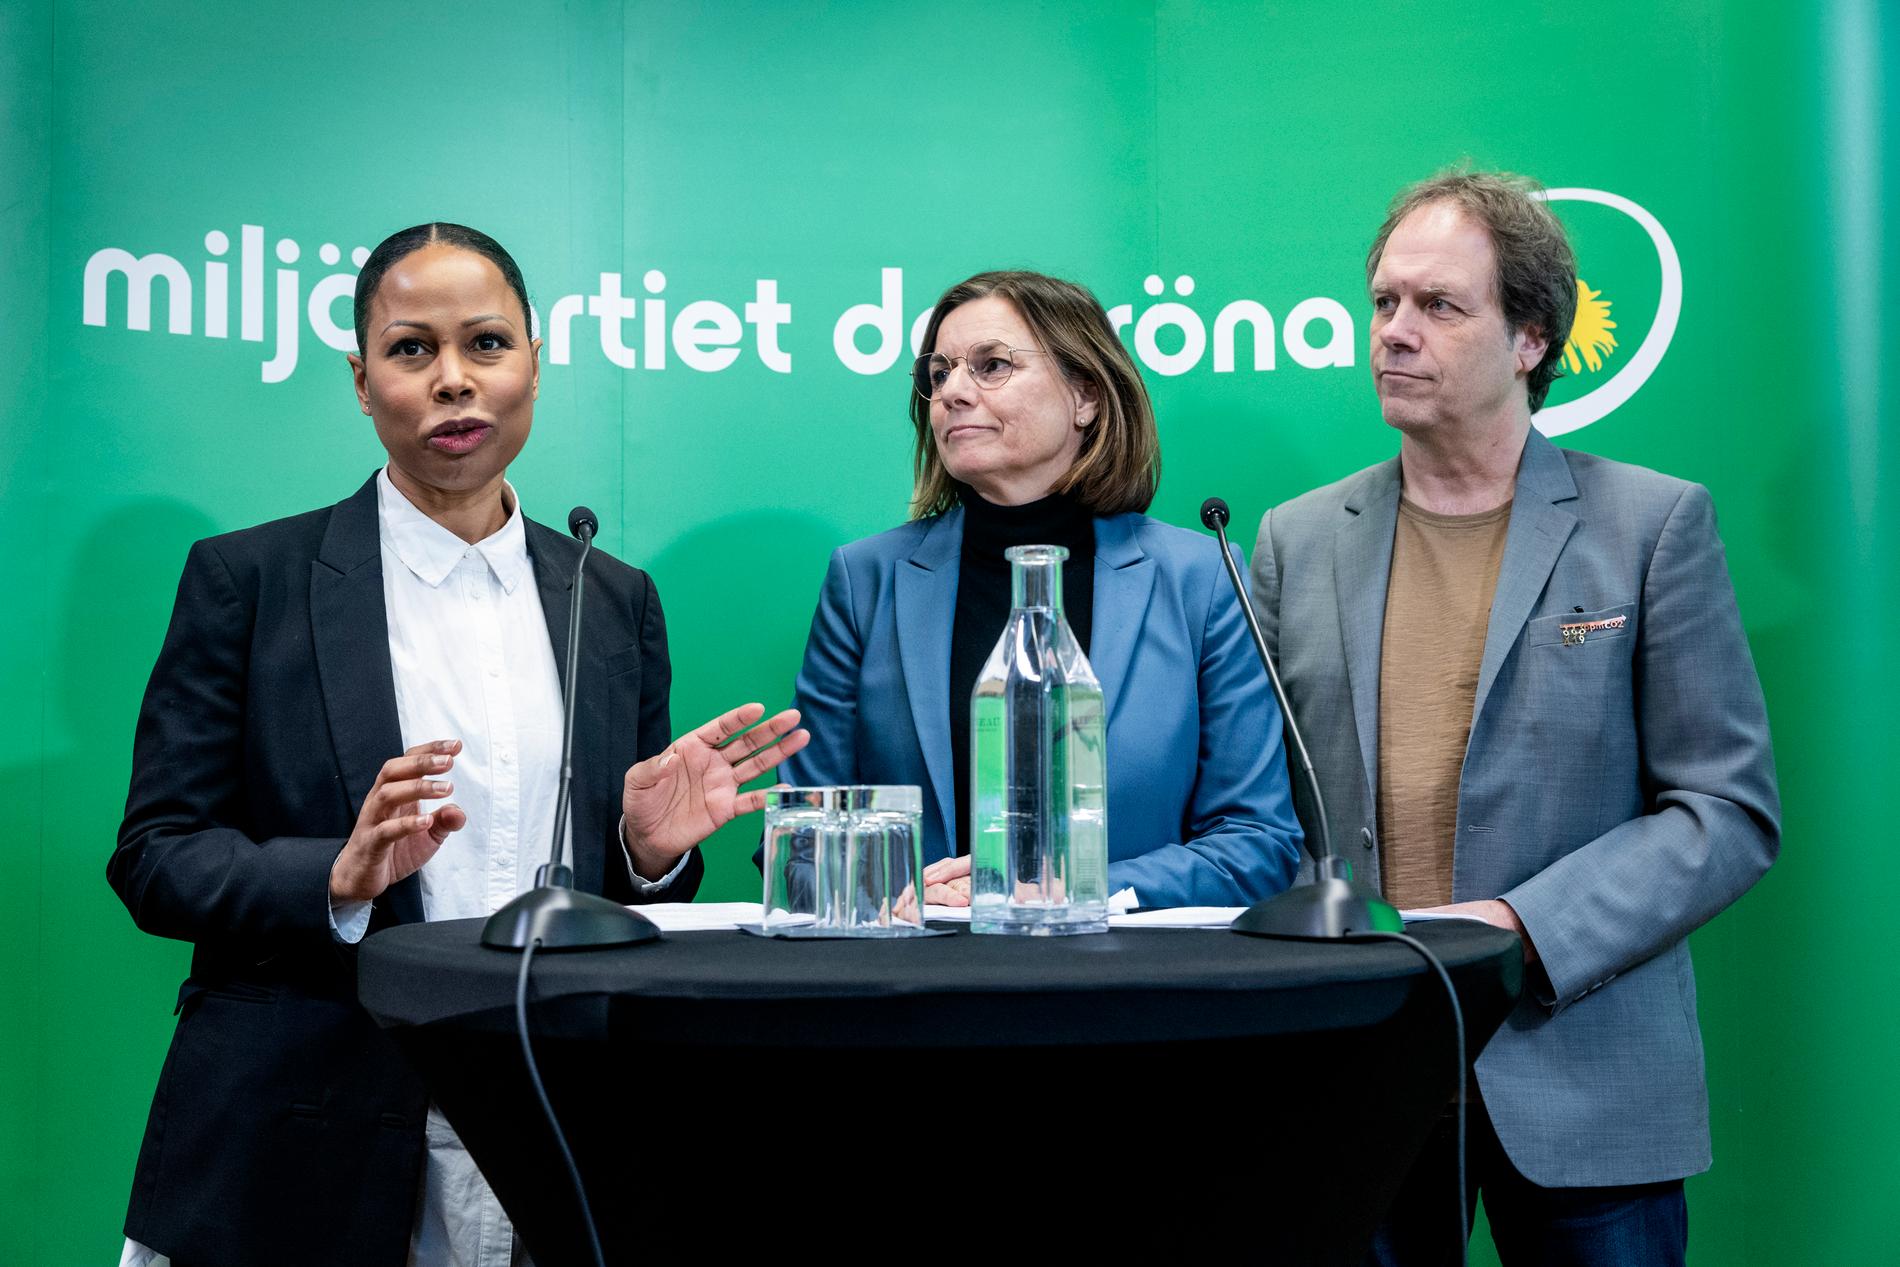 Alice Bah Kuhnke, till vänster, har varit EU-parlamentariker sedan 2019. Arkivbild.